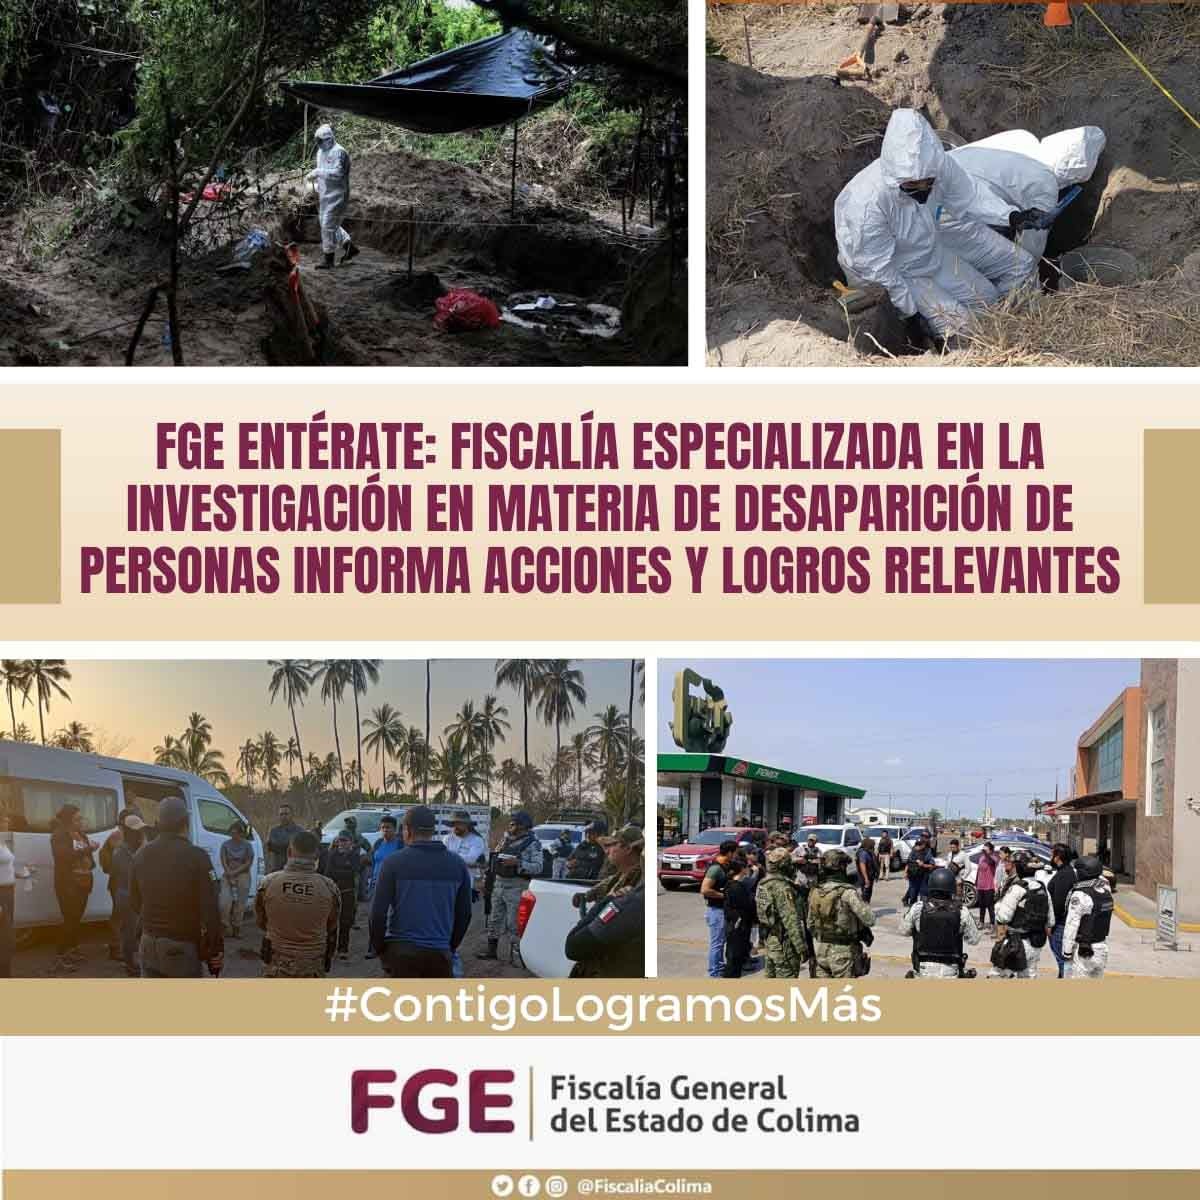 FGE Entérate:Fiscalía Especializada en la Investigación en Materia de Desaparición de Personas informa acciones y logros relevantes